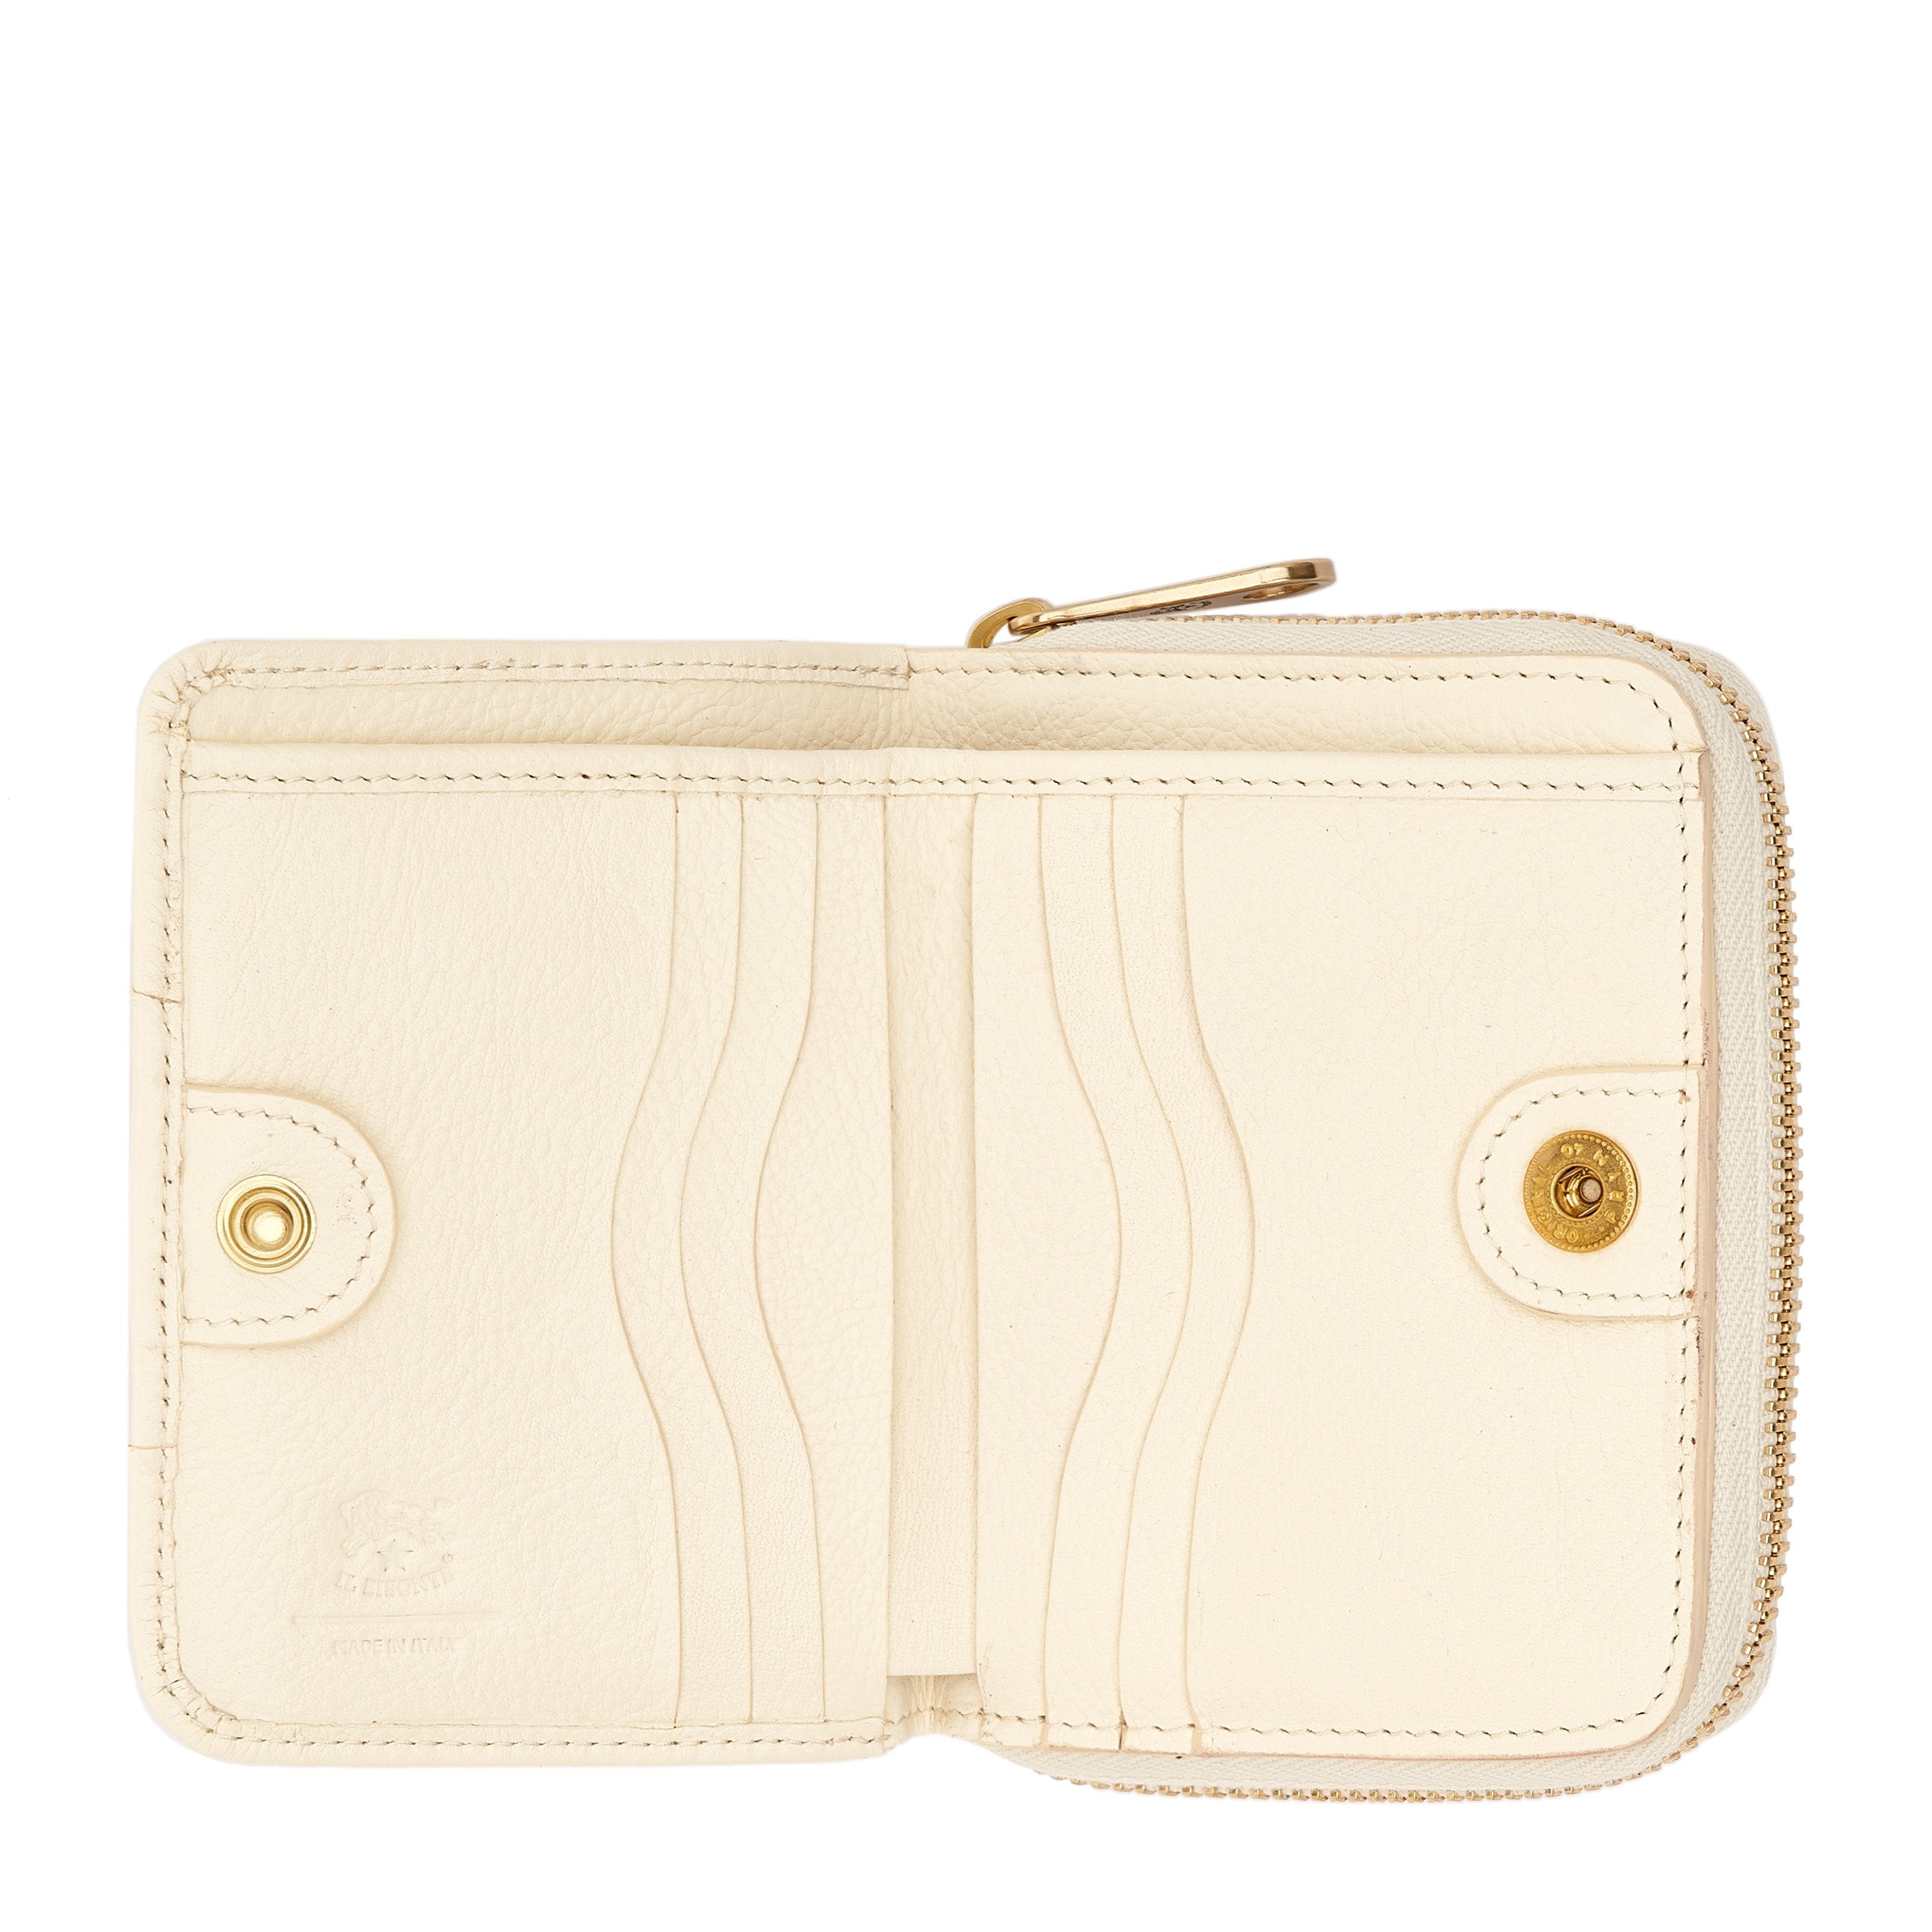 Solaria | Women's zip around wallet in leather color milk